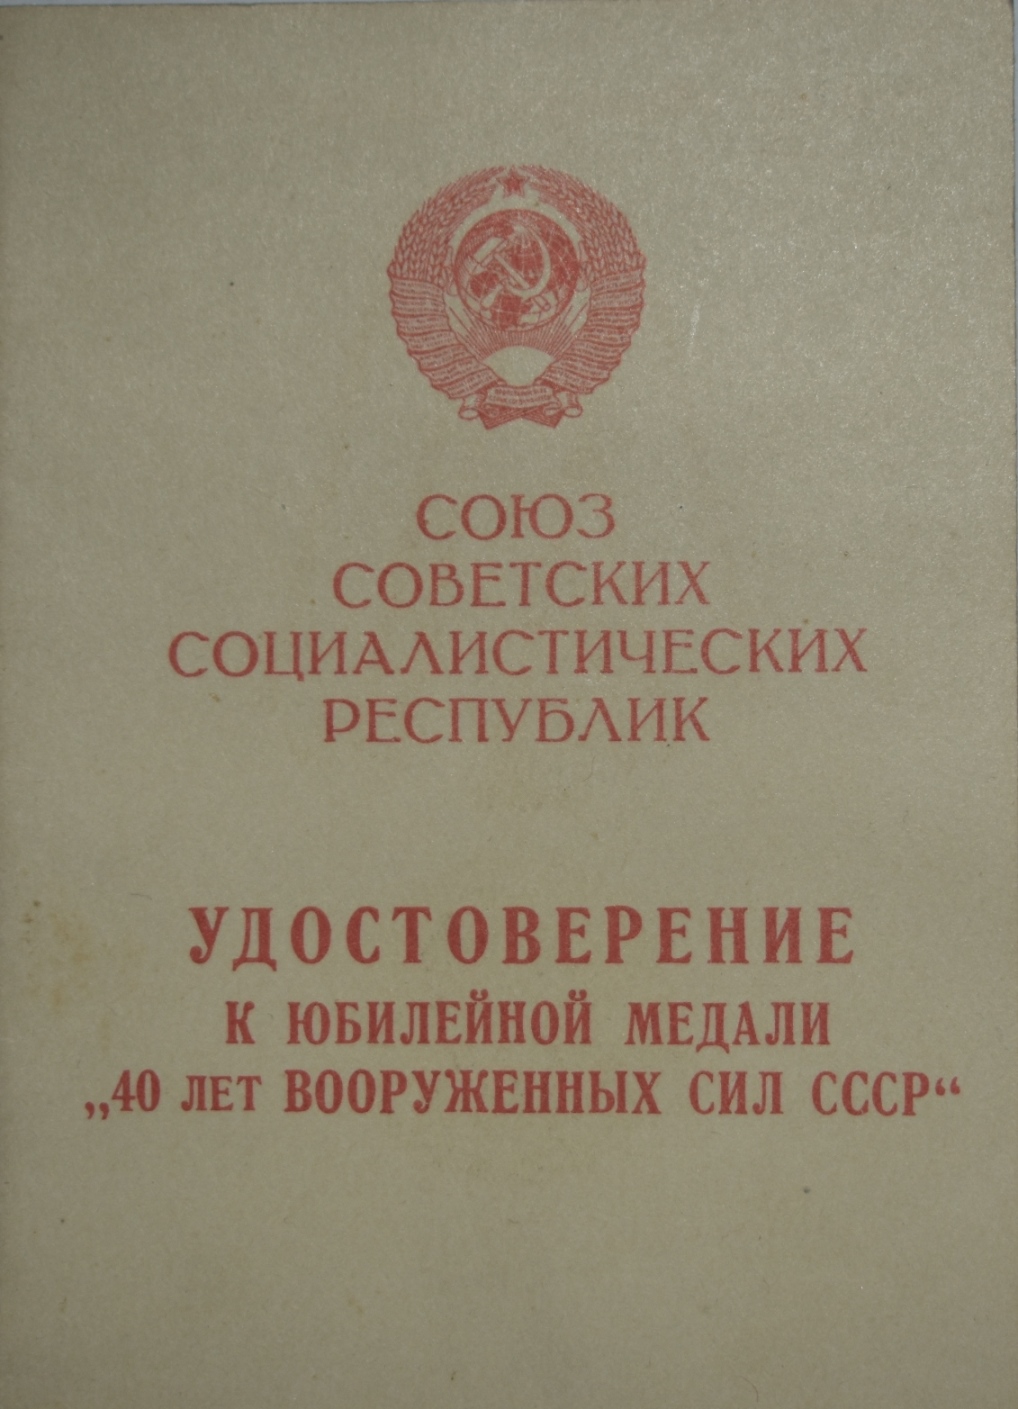 Посвідчення до ювілейної медалі "40 лет Вооруженных Сил СССР"